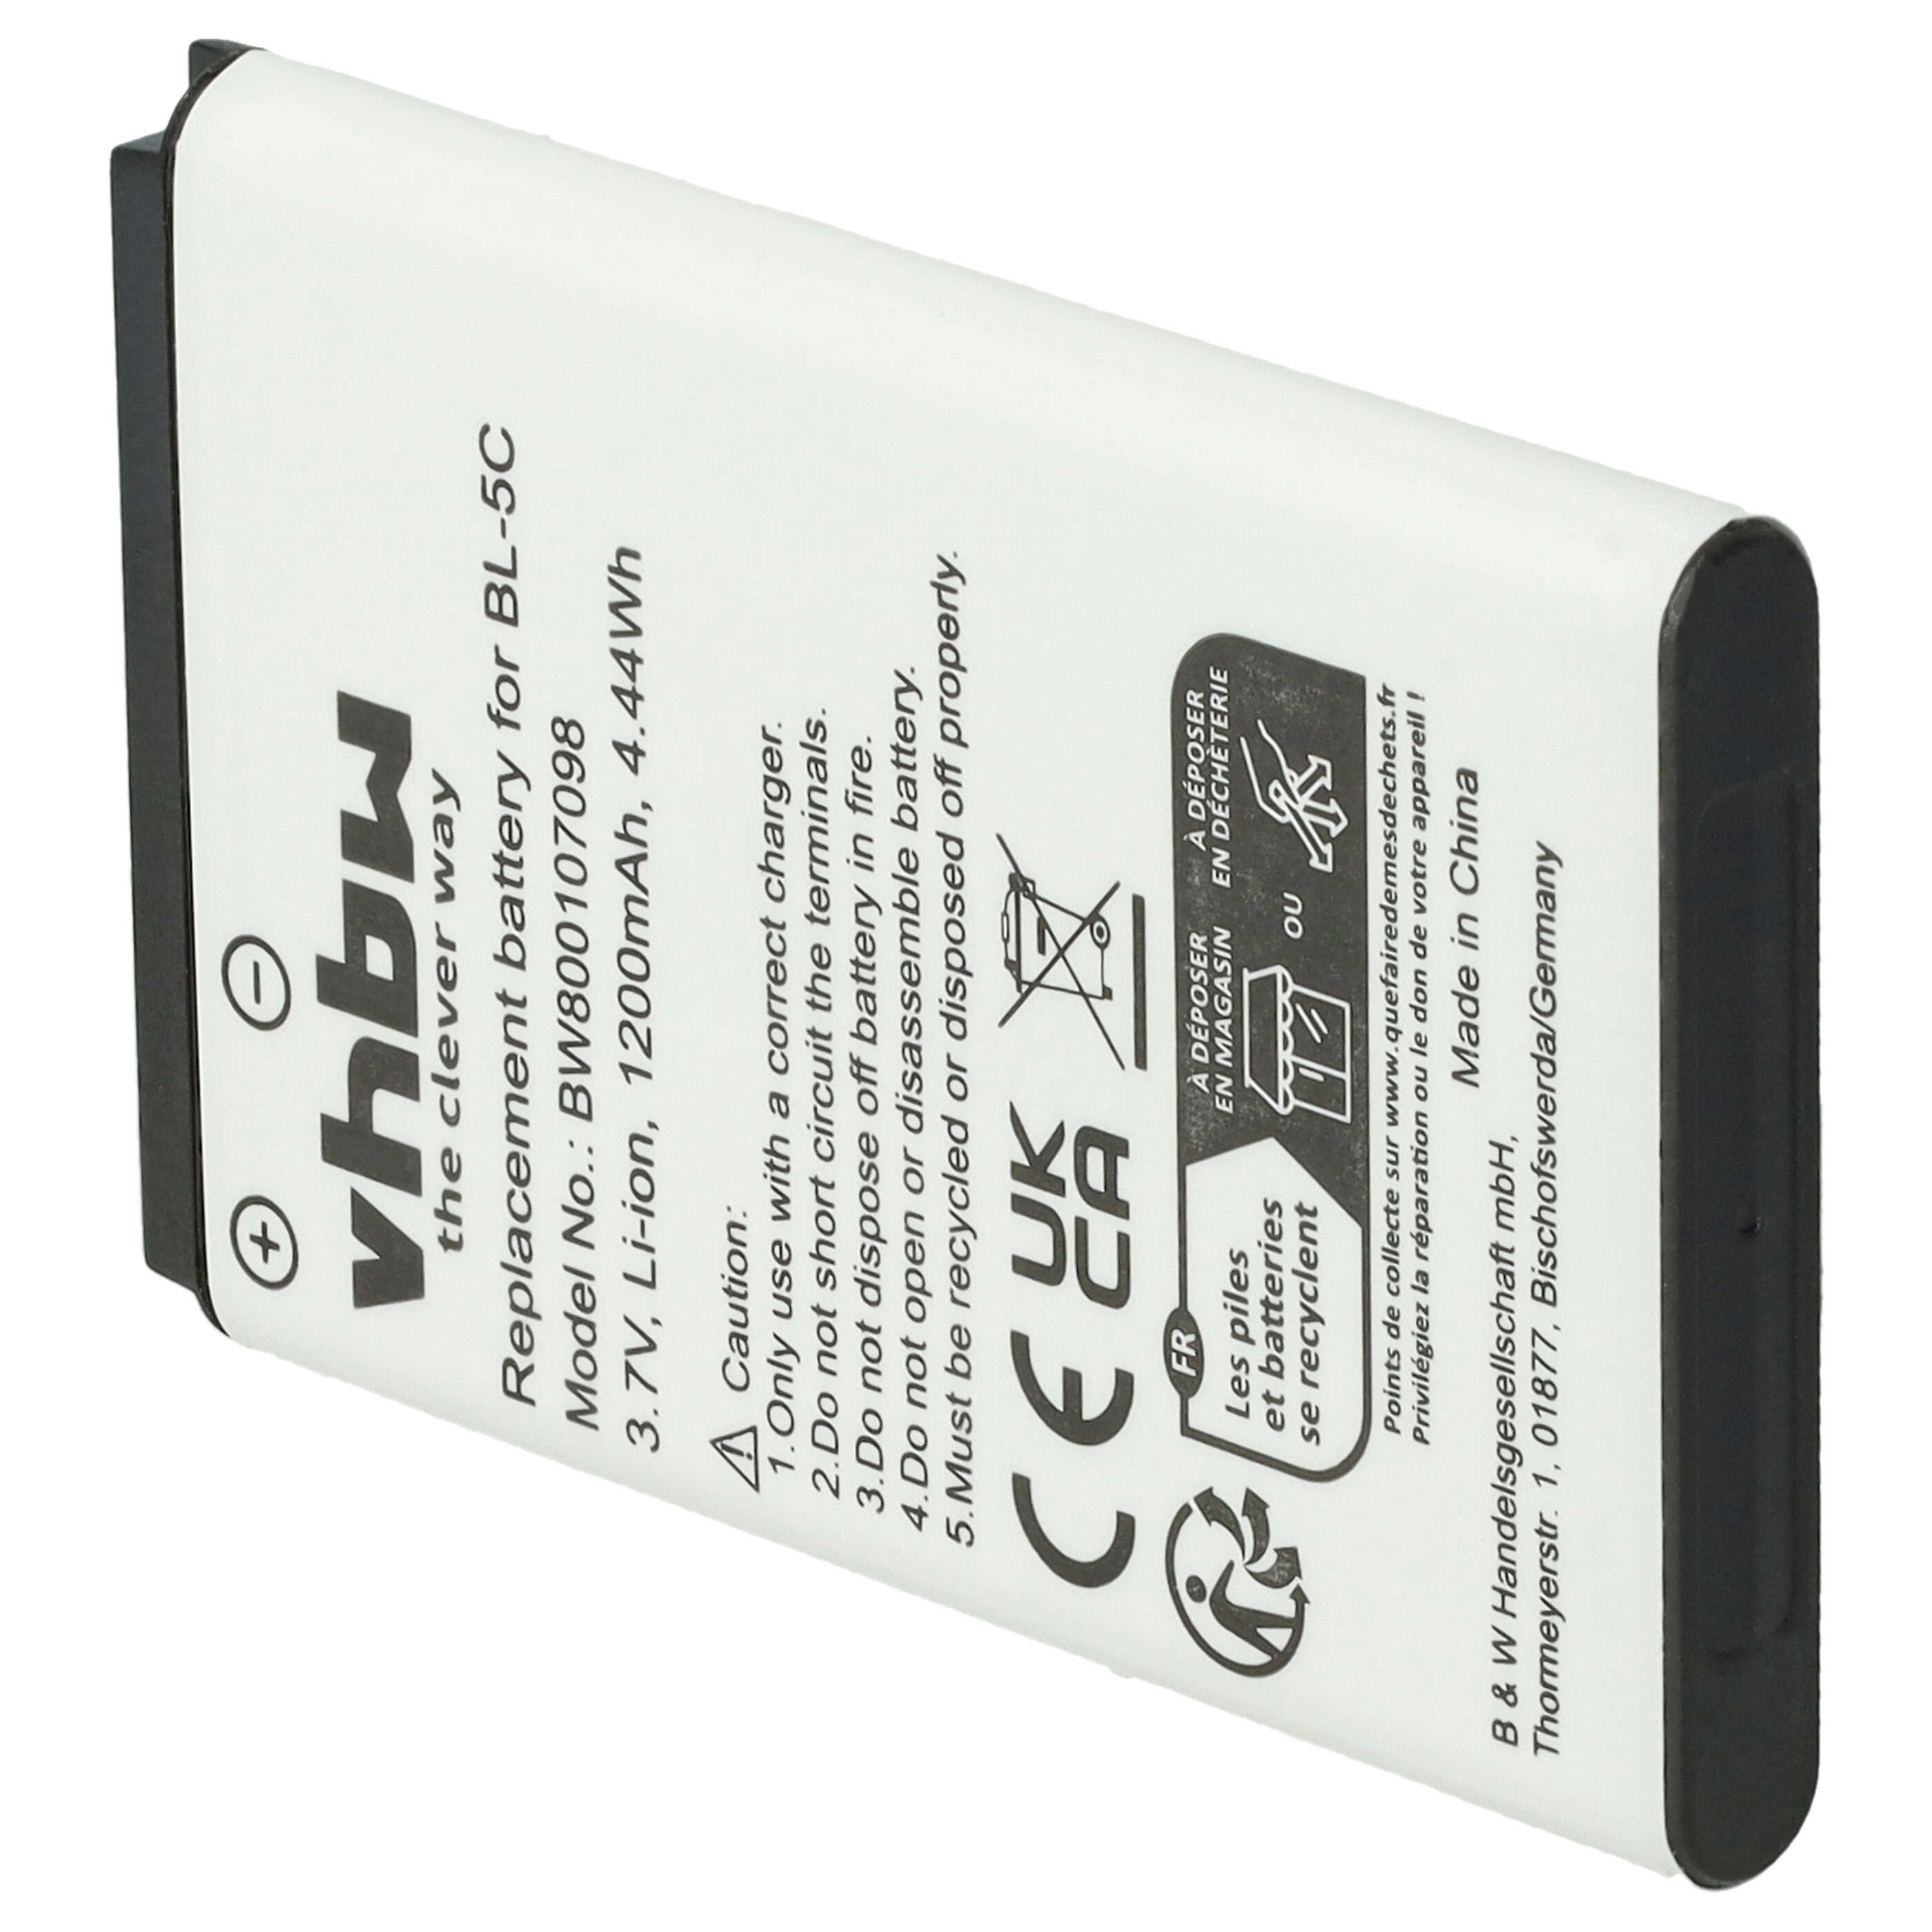 Batterie remplace Blu C533457105T pour téléphone portable - 1200mAh, 3,7V, Li-ion